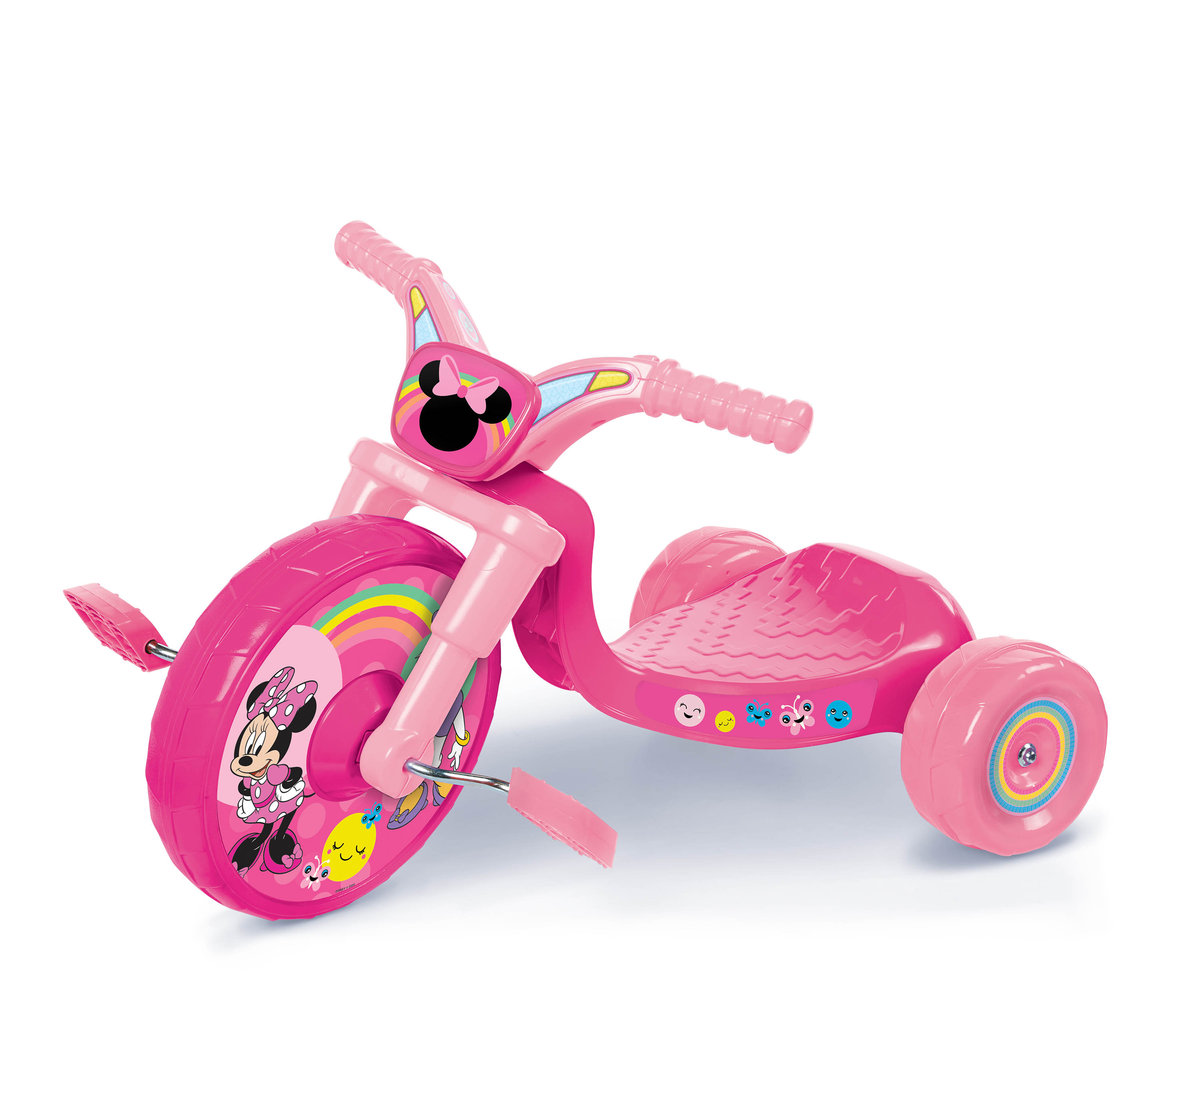 Zdjęcia - Rower dziecięcy Jakks Minnie, Rowerek trzykołowy 10'' z dźwiękami, różowy 